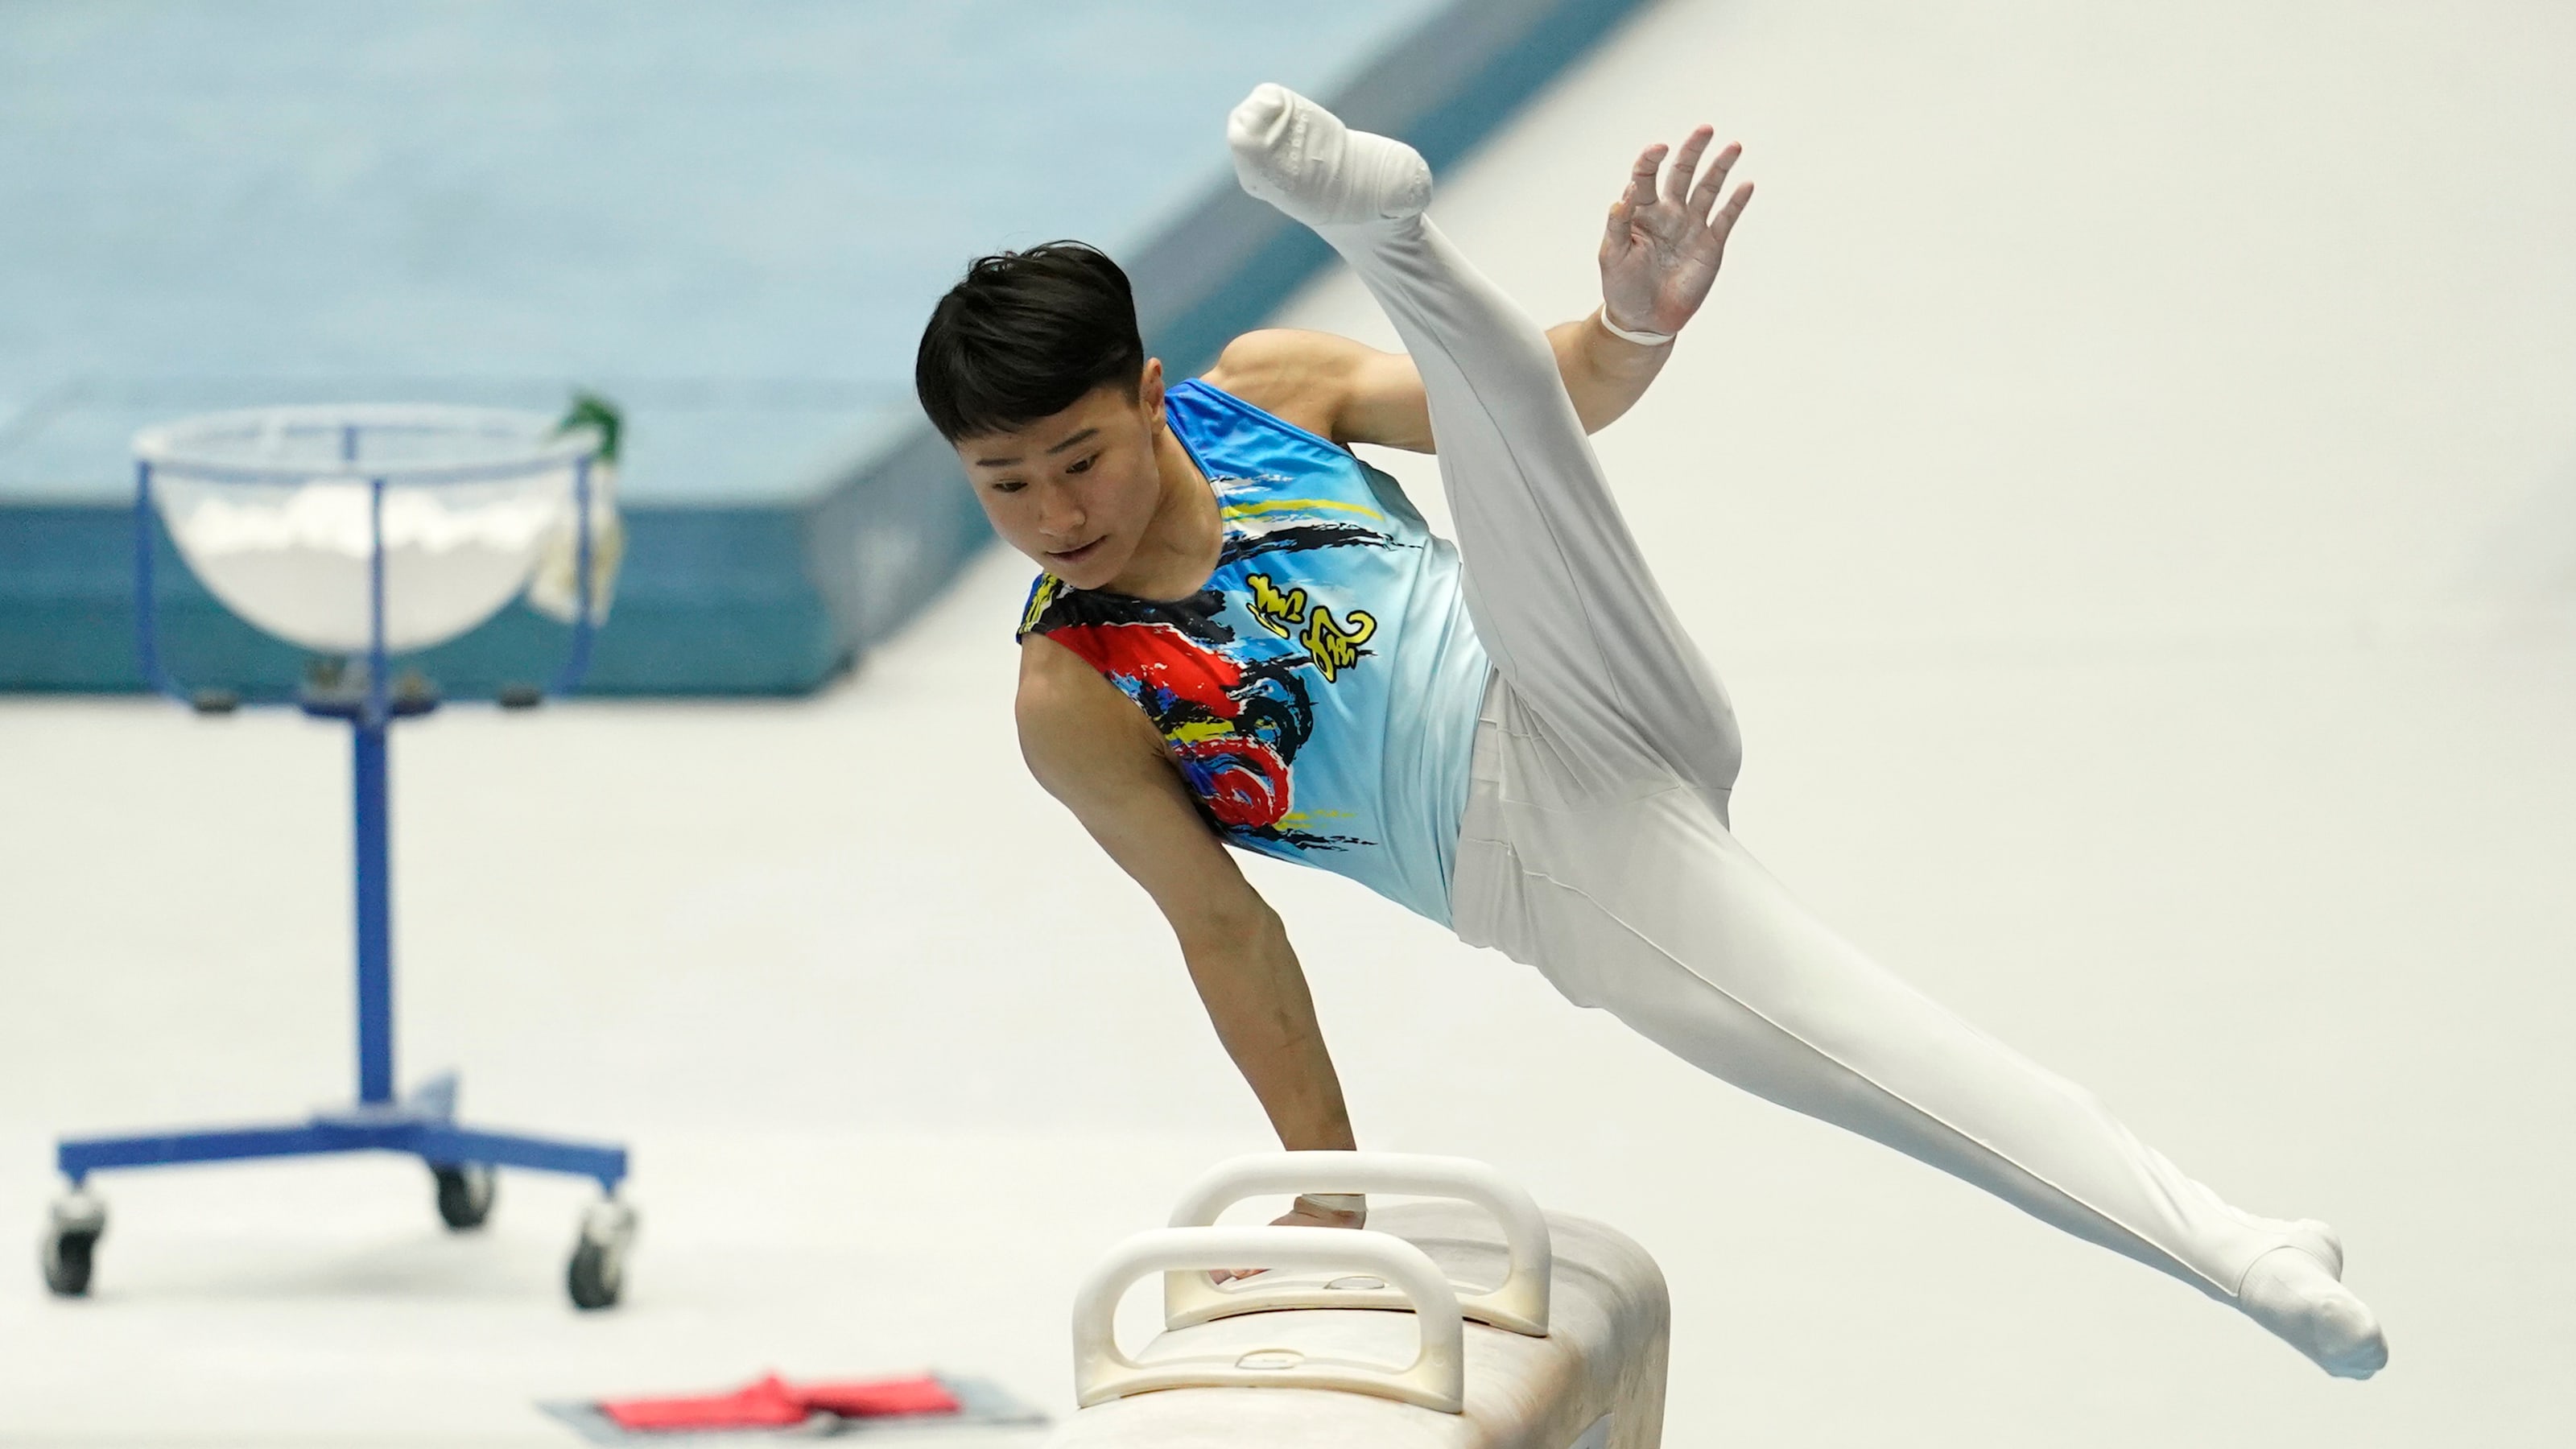 日本体操新星北园丈琉目标锁定东京奥运会